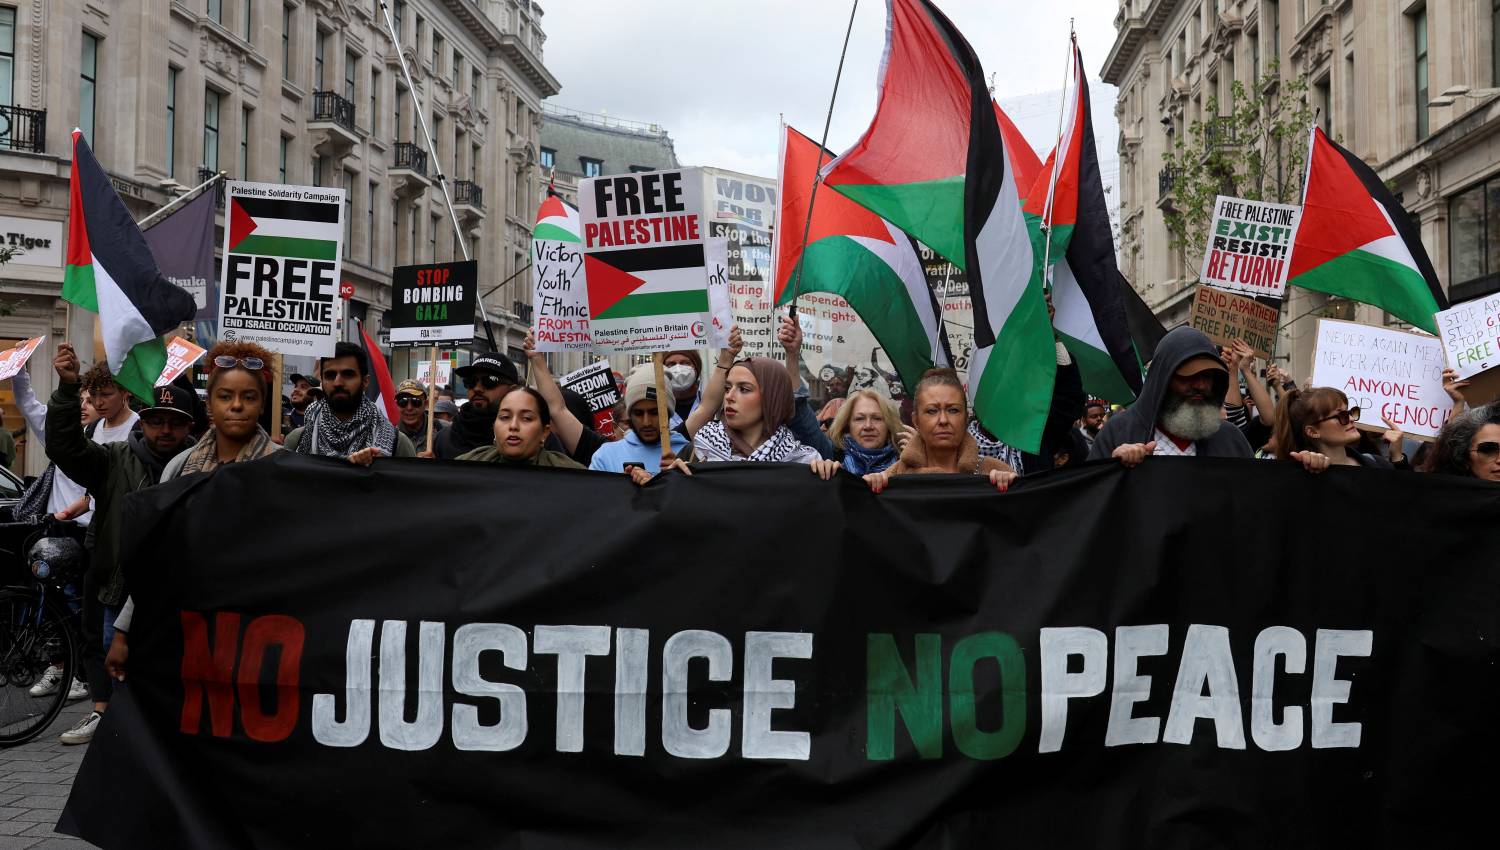 الرأي العام العالمي إلى جانب فلسطين: لا مكان آمن للإسرائيليين 